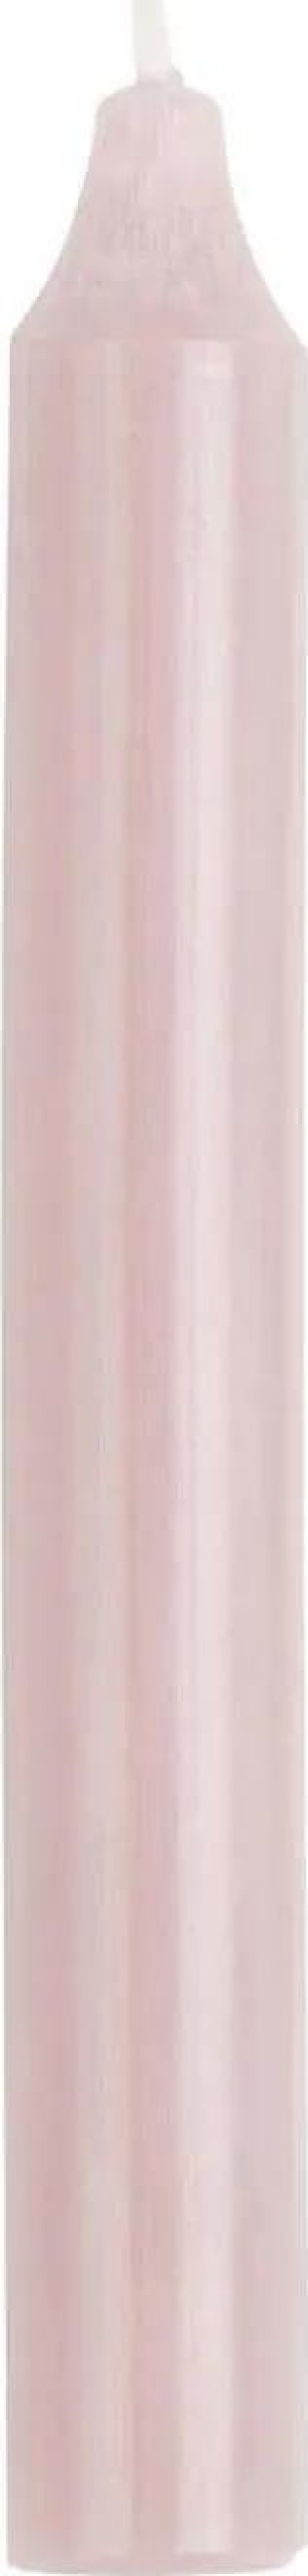 IB LAURSEN Vysoká svíčka Rustic Light Pink 18 cm, růžová barva, vosk